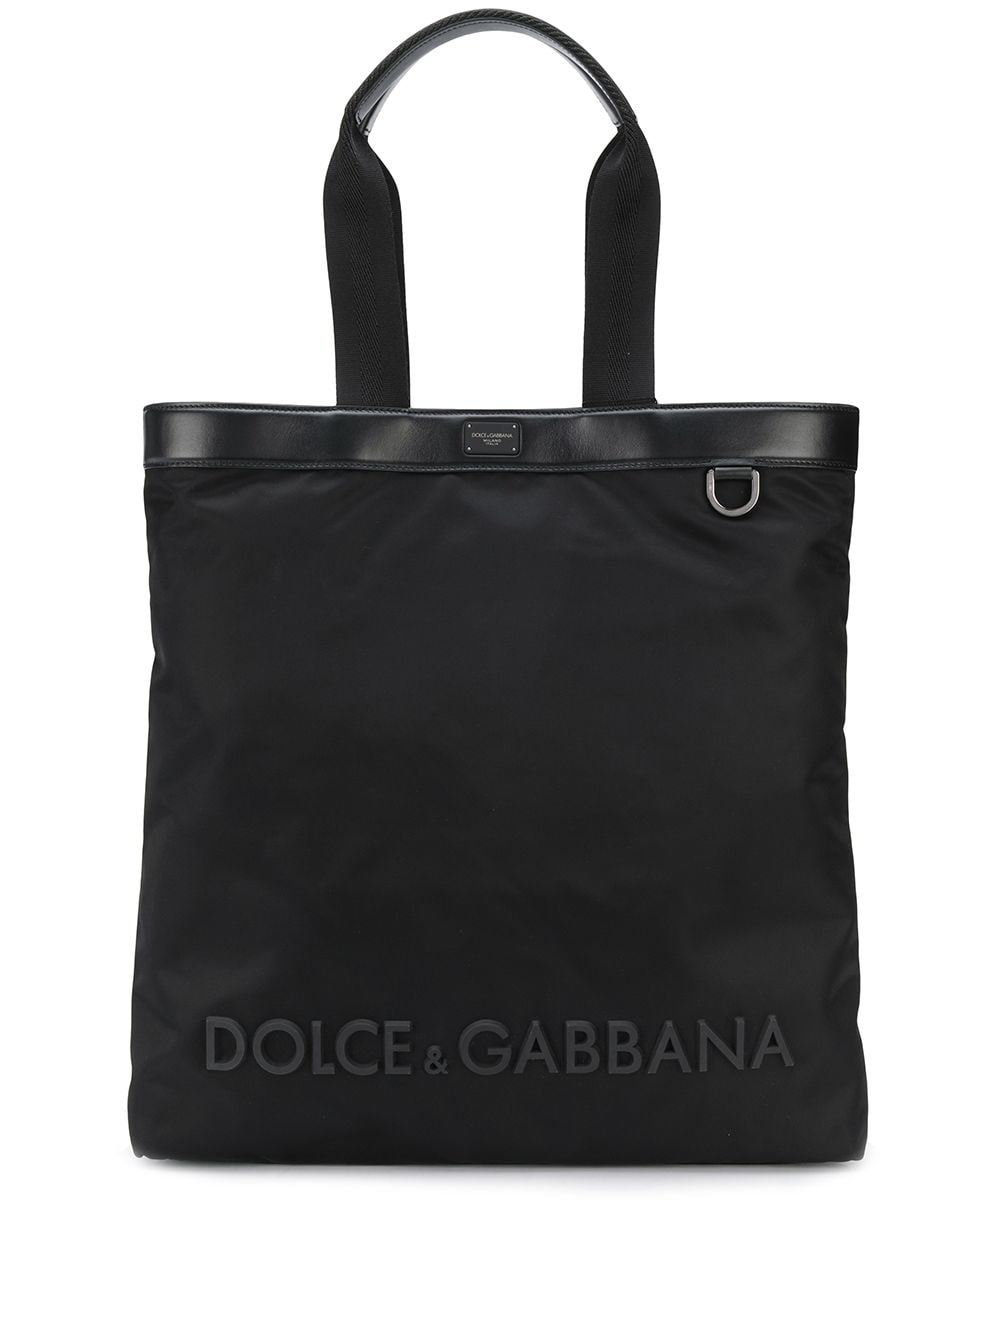 фото Dolce & gabbana сумка-тоут с логотипом